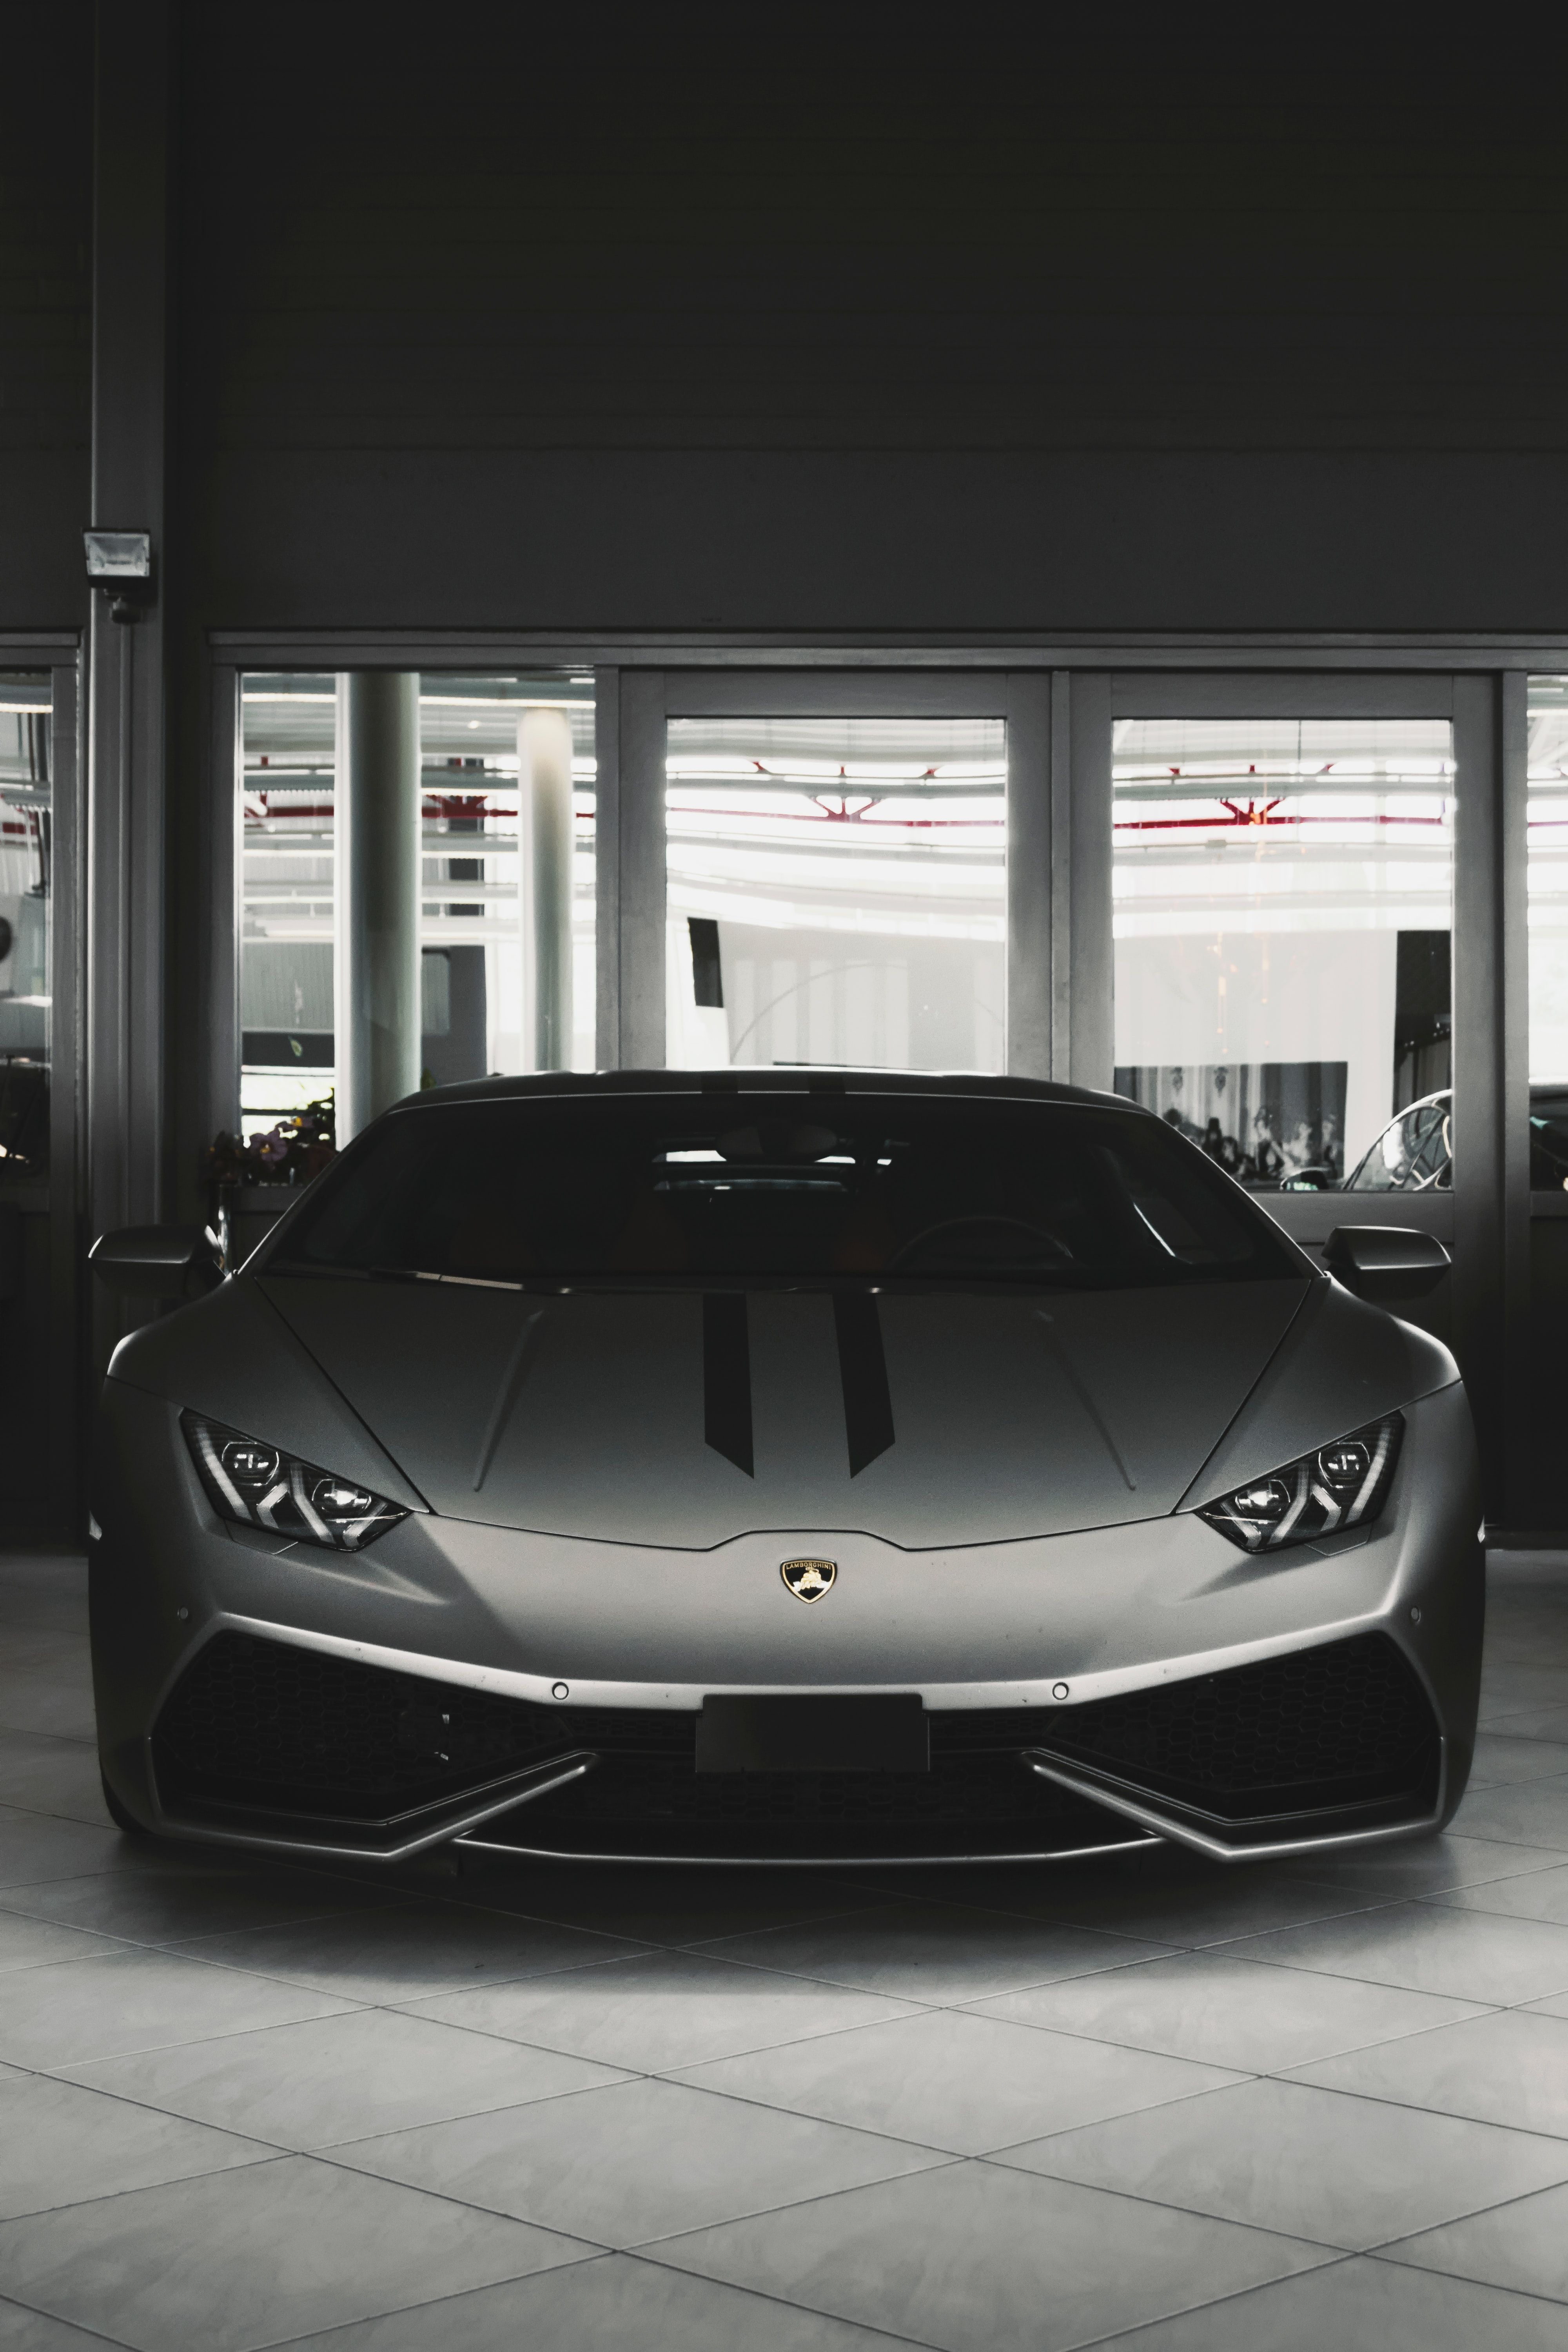 Lamborghini Sinistro Concept Wallpapers